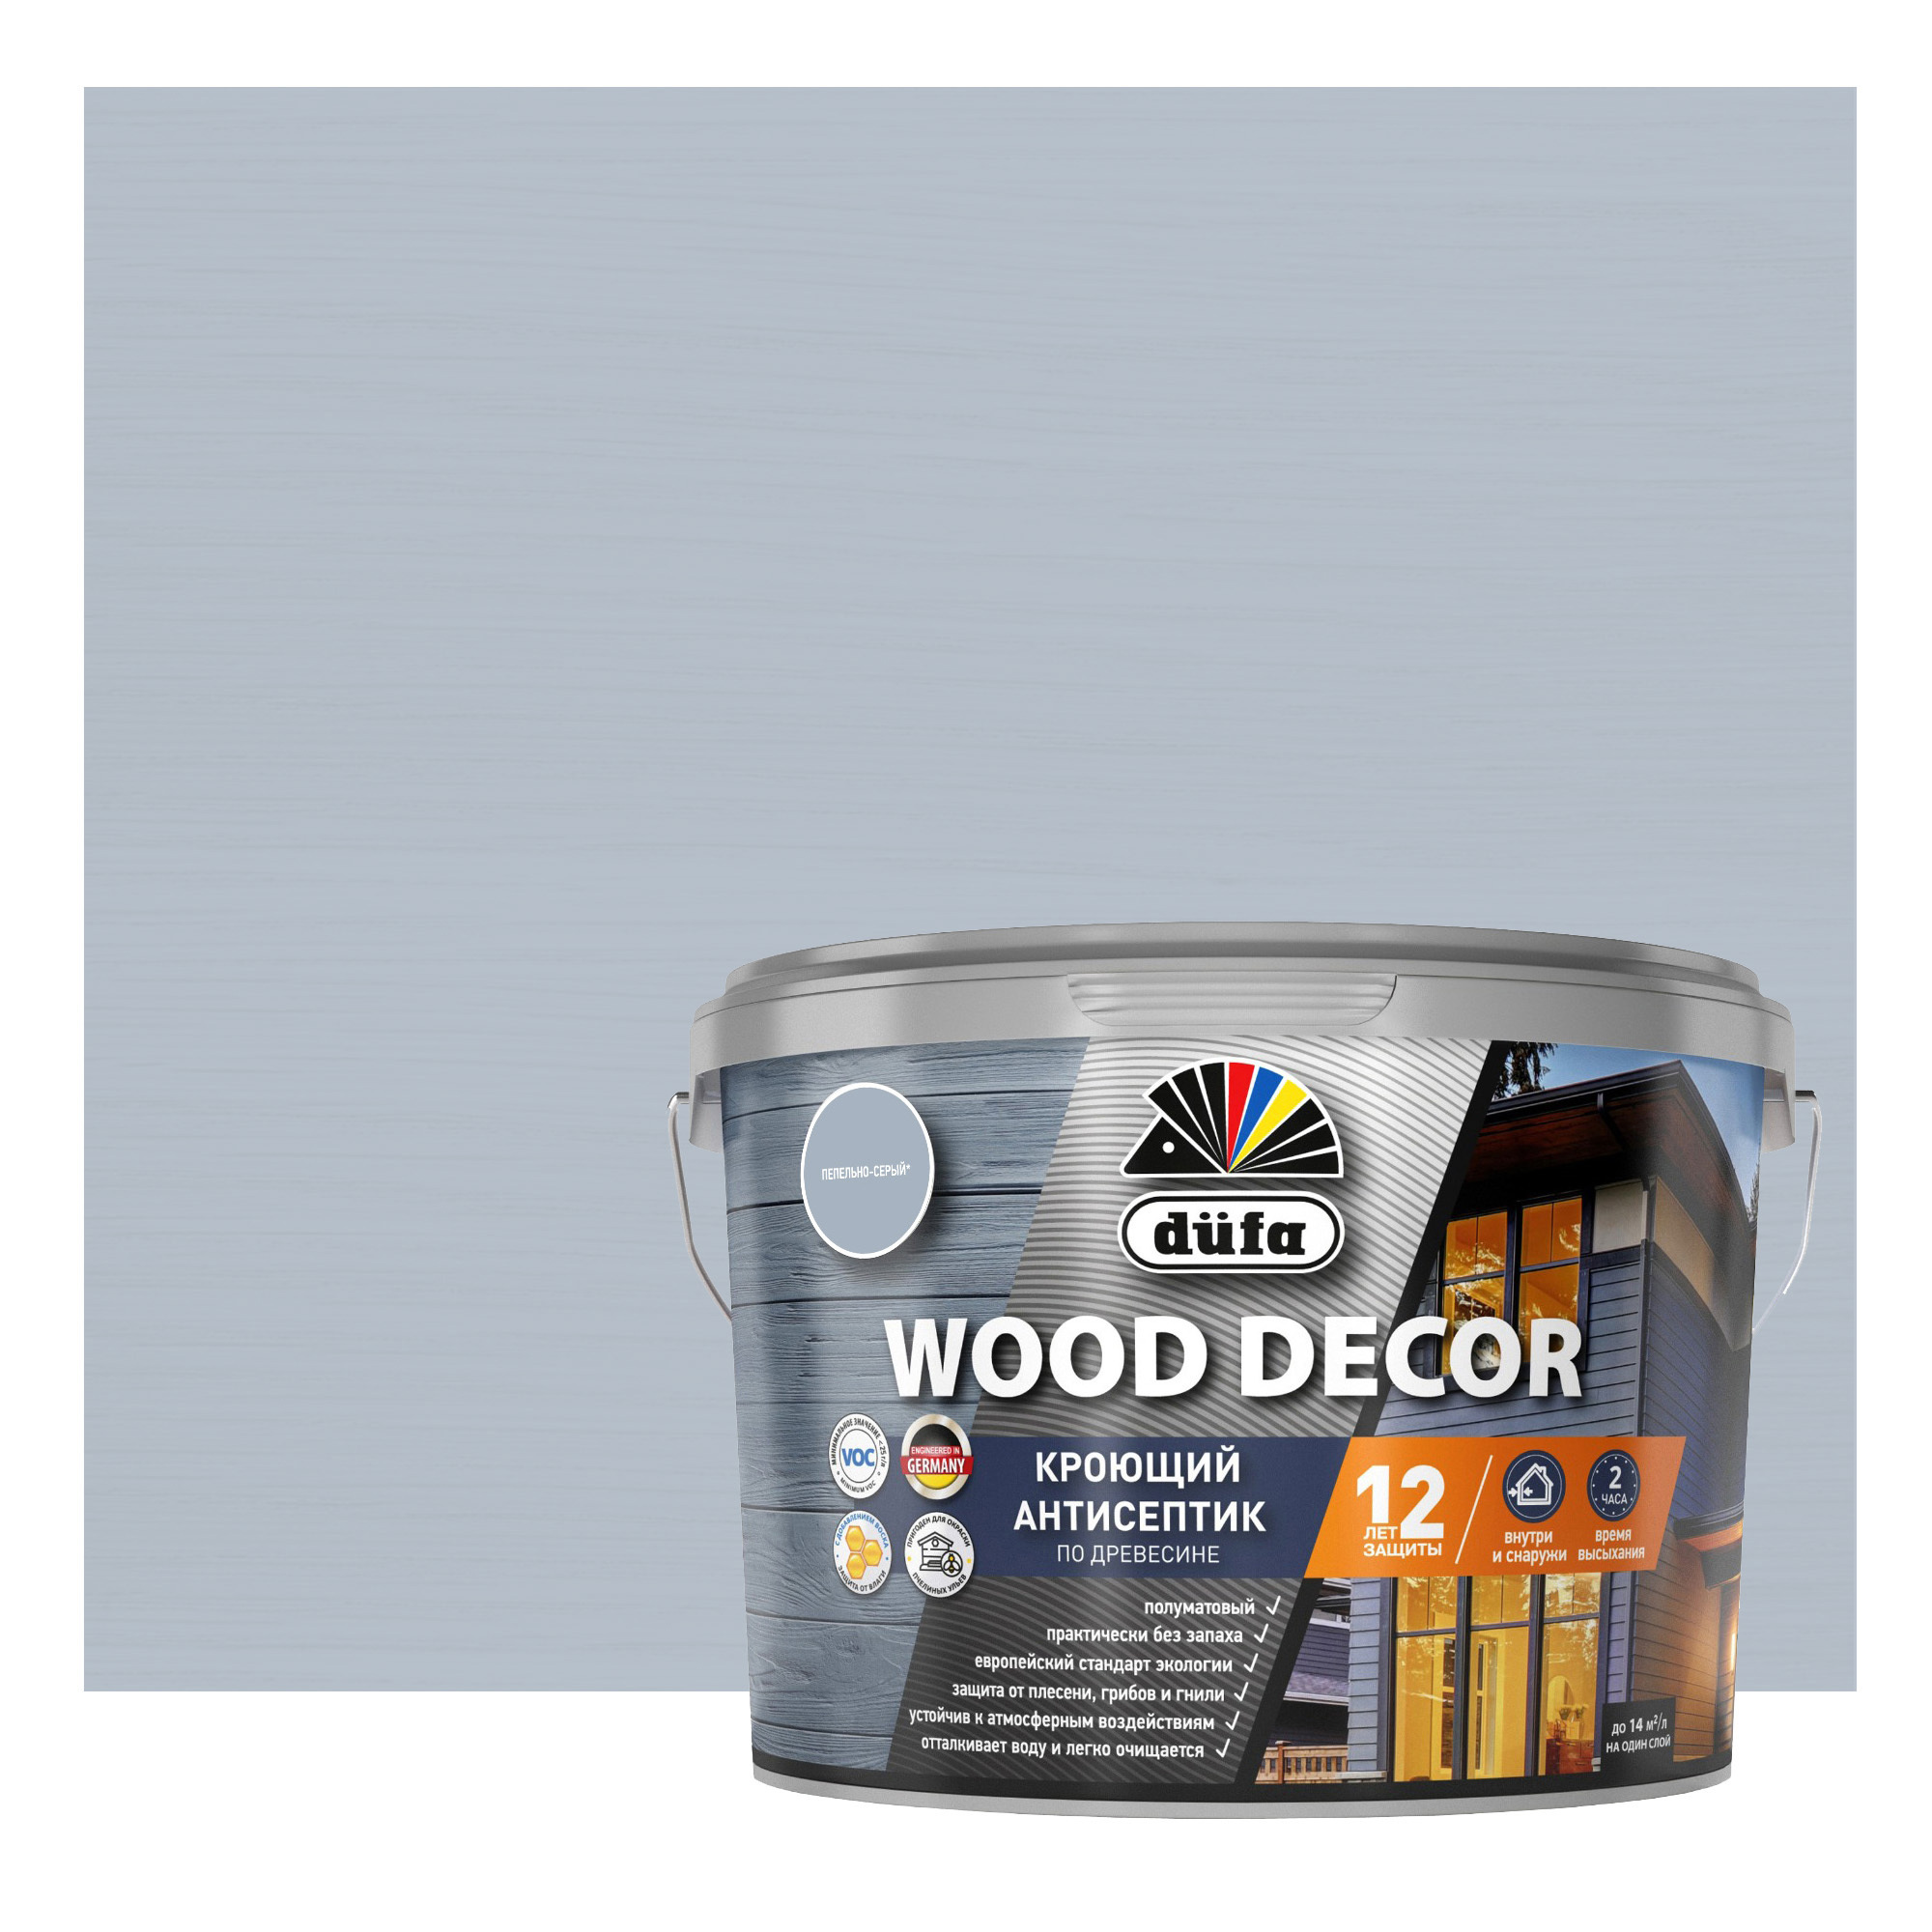 84792271 Антисептик для дерева Wood Decor полуматовый цвет серый 9 л STLM-0055161 DUFA